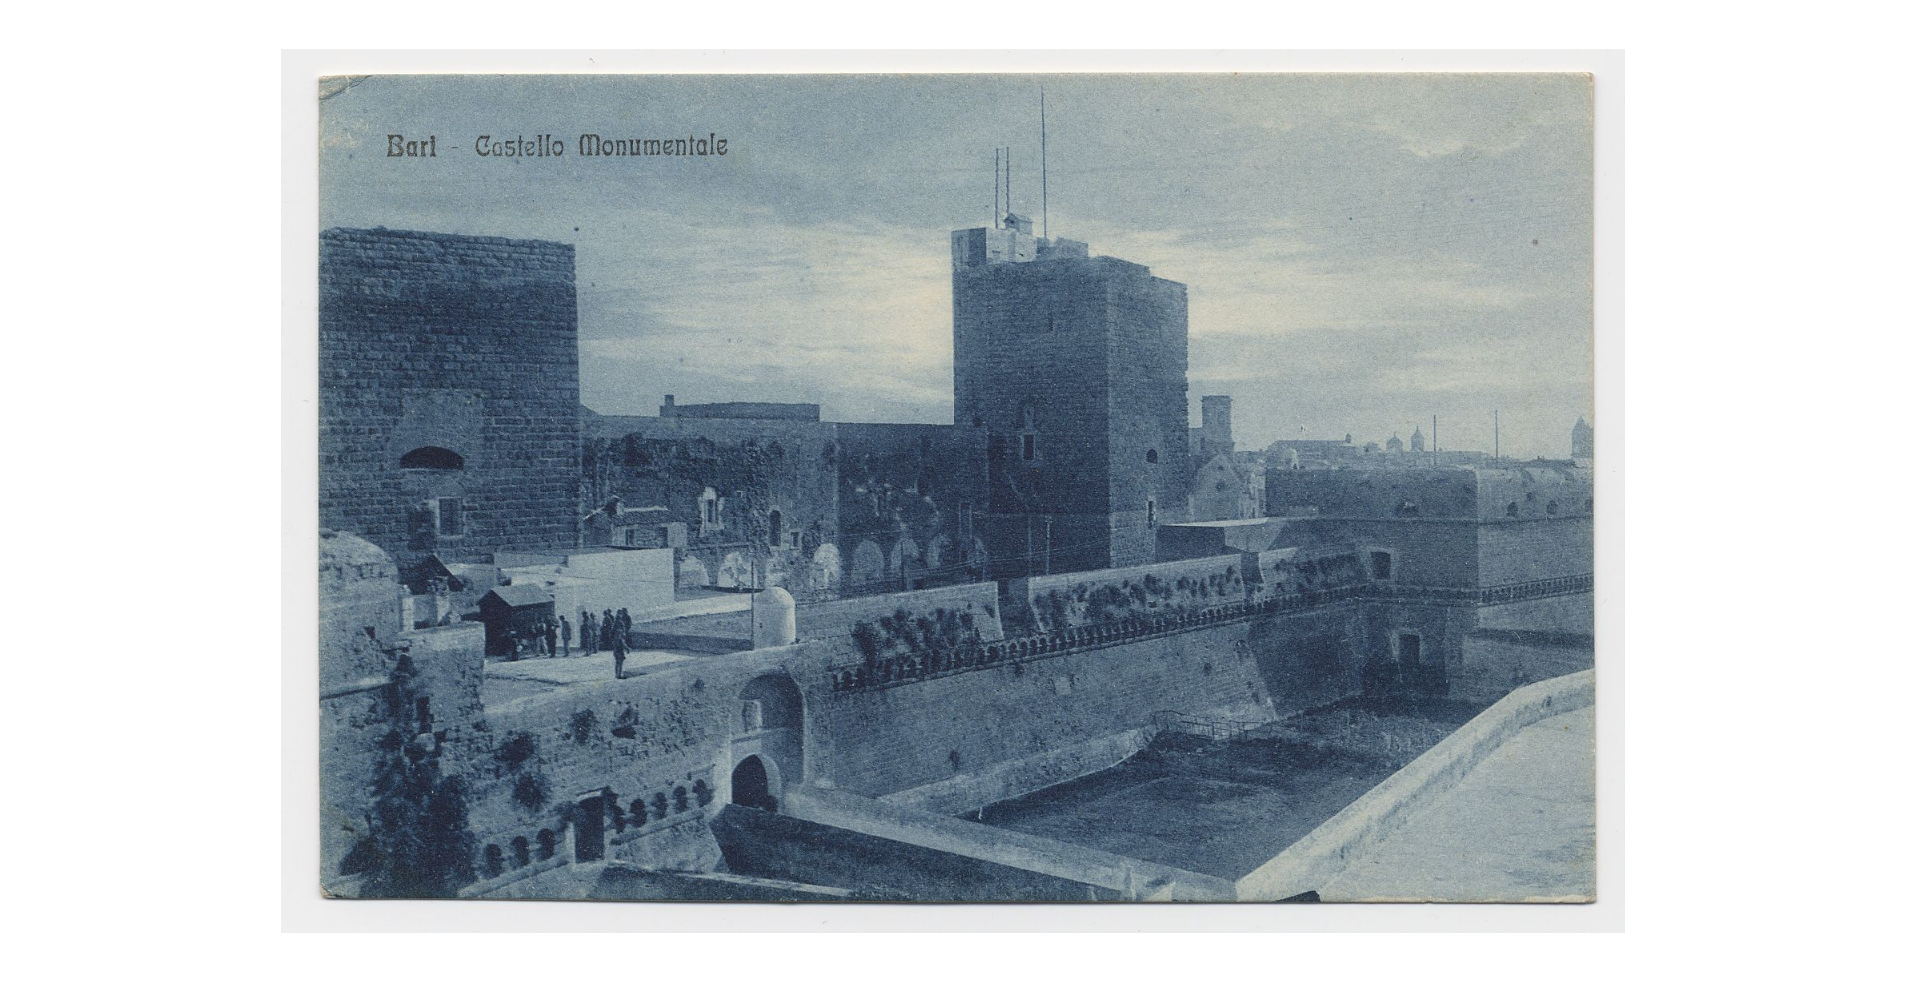 Fotografo non identificato, Bari - Castello Svevo, 1951-2000, cartolina, FFC018227